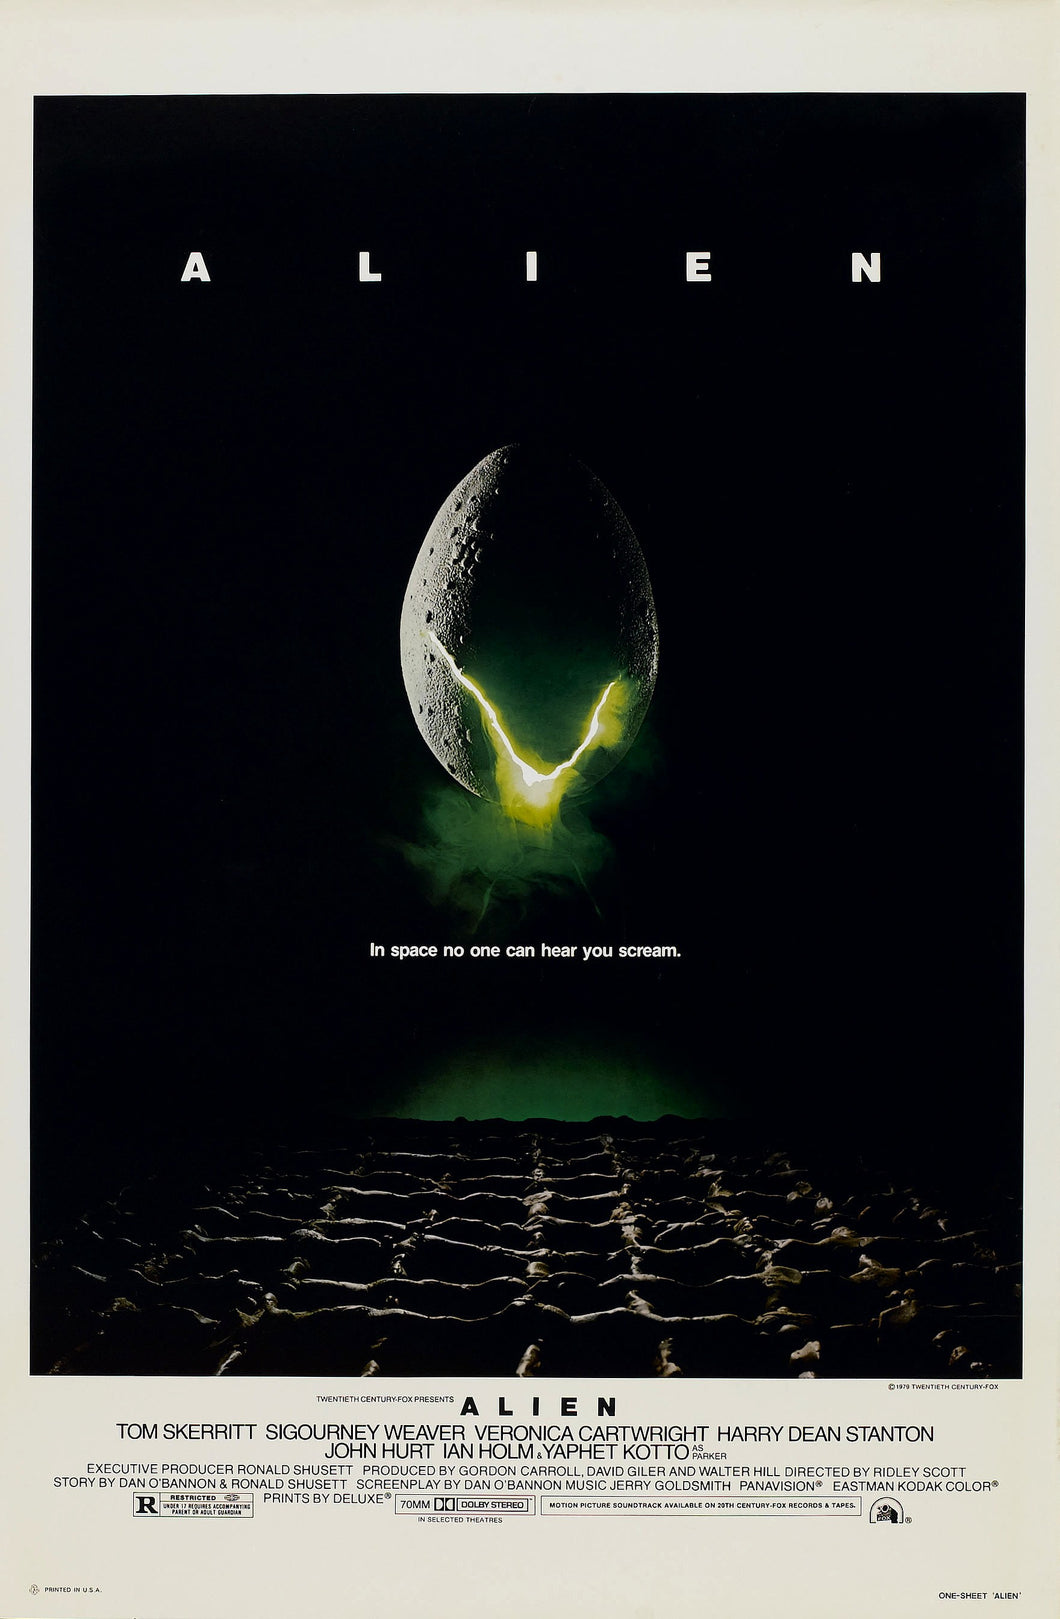 Poster Pelicula Alien